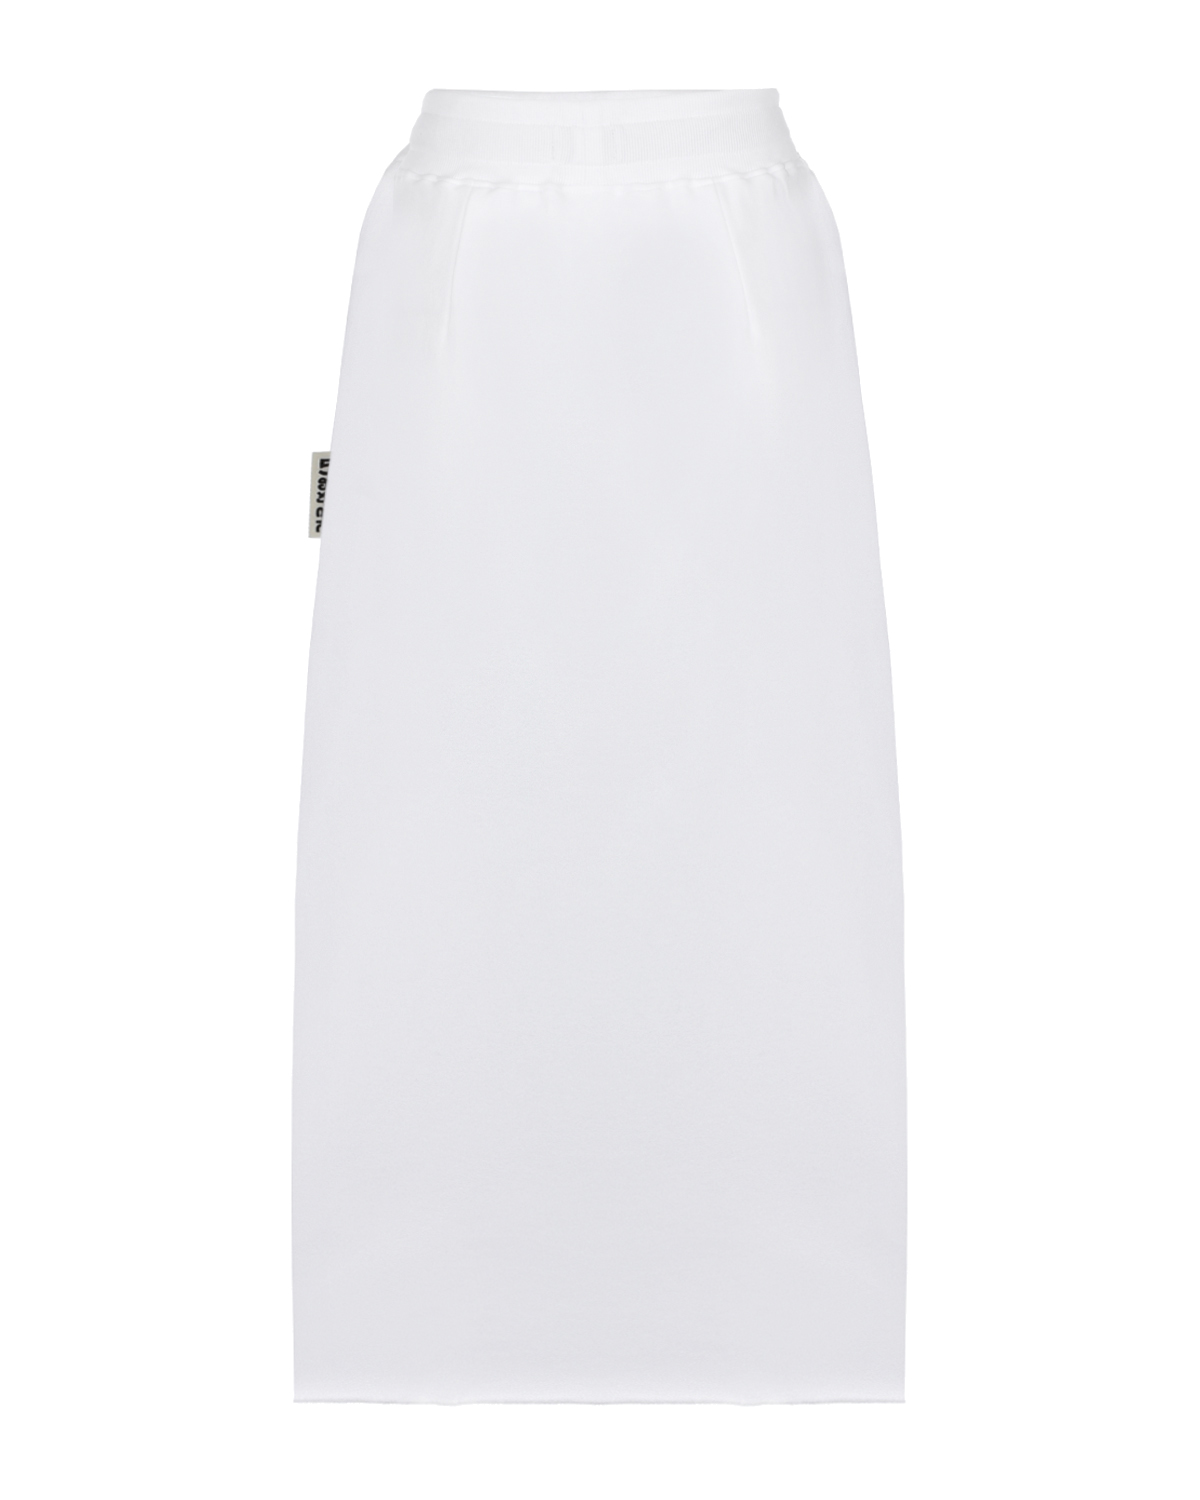 Белая юбка в спортивном стиле 5 Preview, размер 40, цвет белый - фото 5